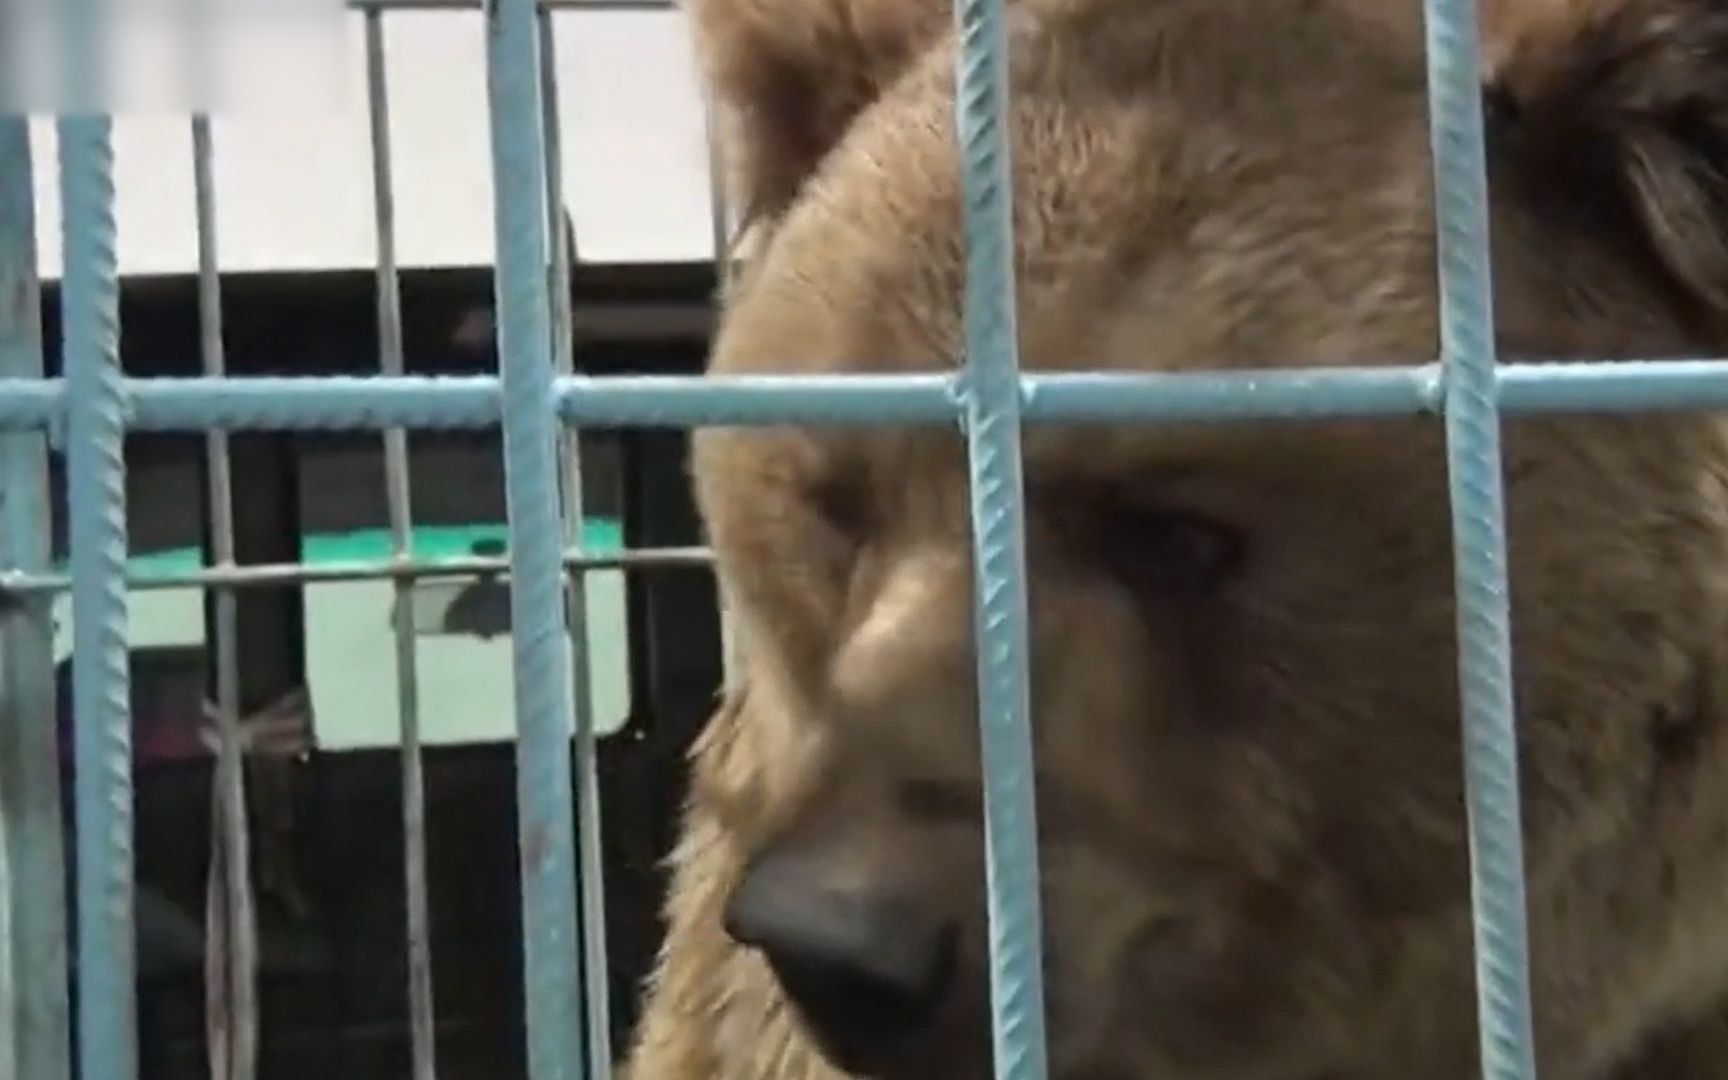 大棕熊刚被放出笼子突然开始疯狂袭击围观人群 现场顿时陷入混乱